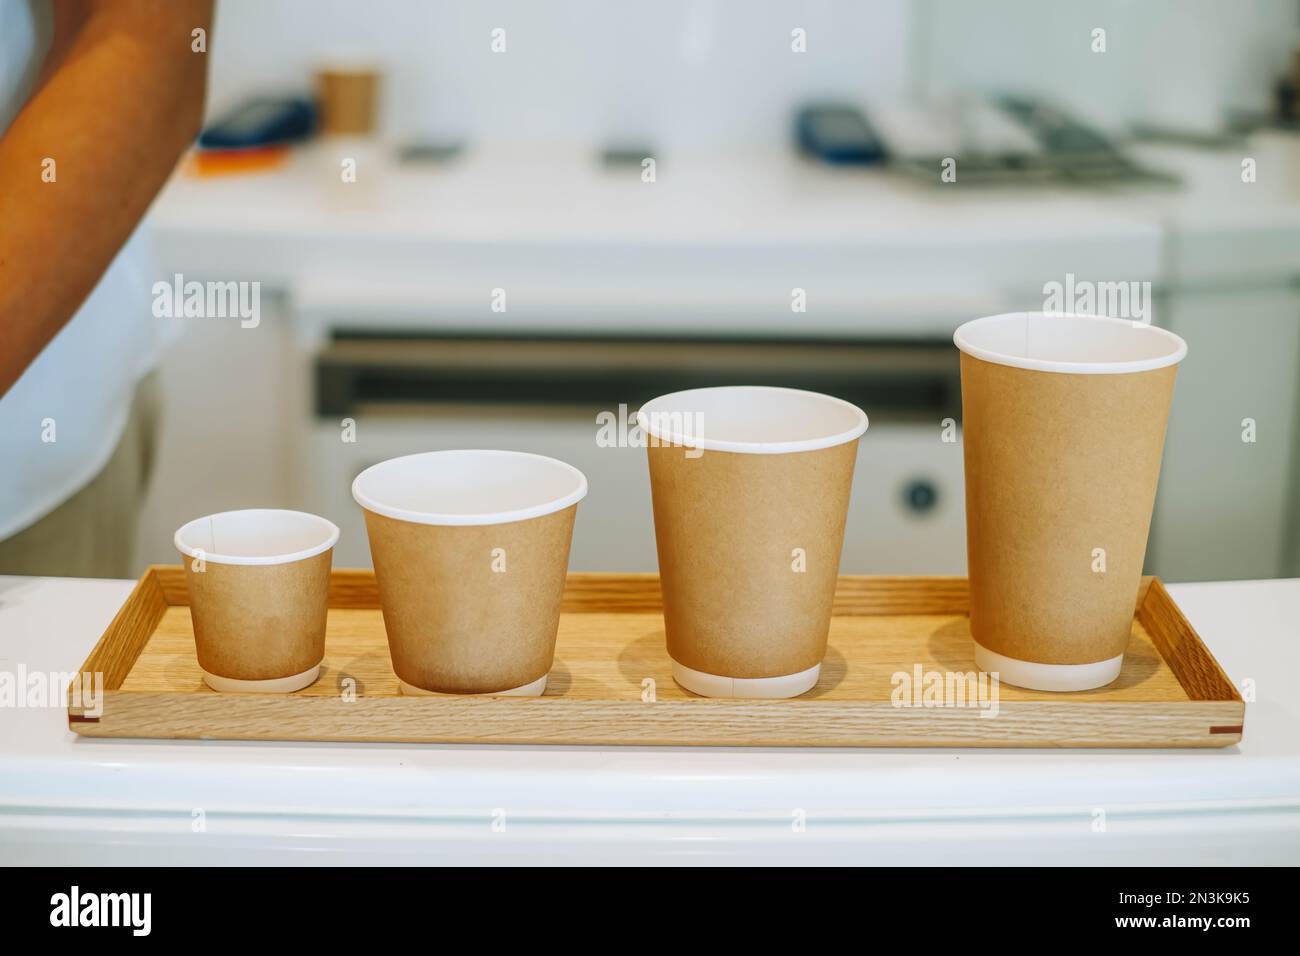 Solución de café ecológica: Cuatro tamaños de tazas de café desechables en  una bandeja de madera. Perfecto para llevar, las tazas están hechas de  cartón y espuma, s Fotografía de stock -